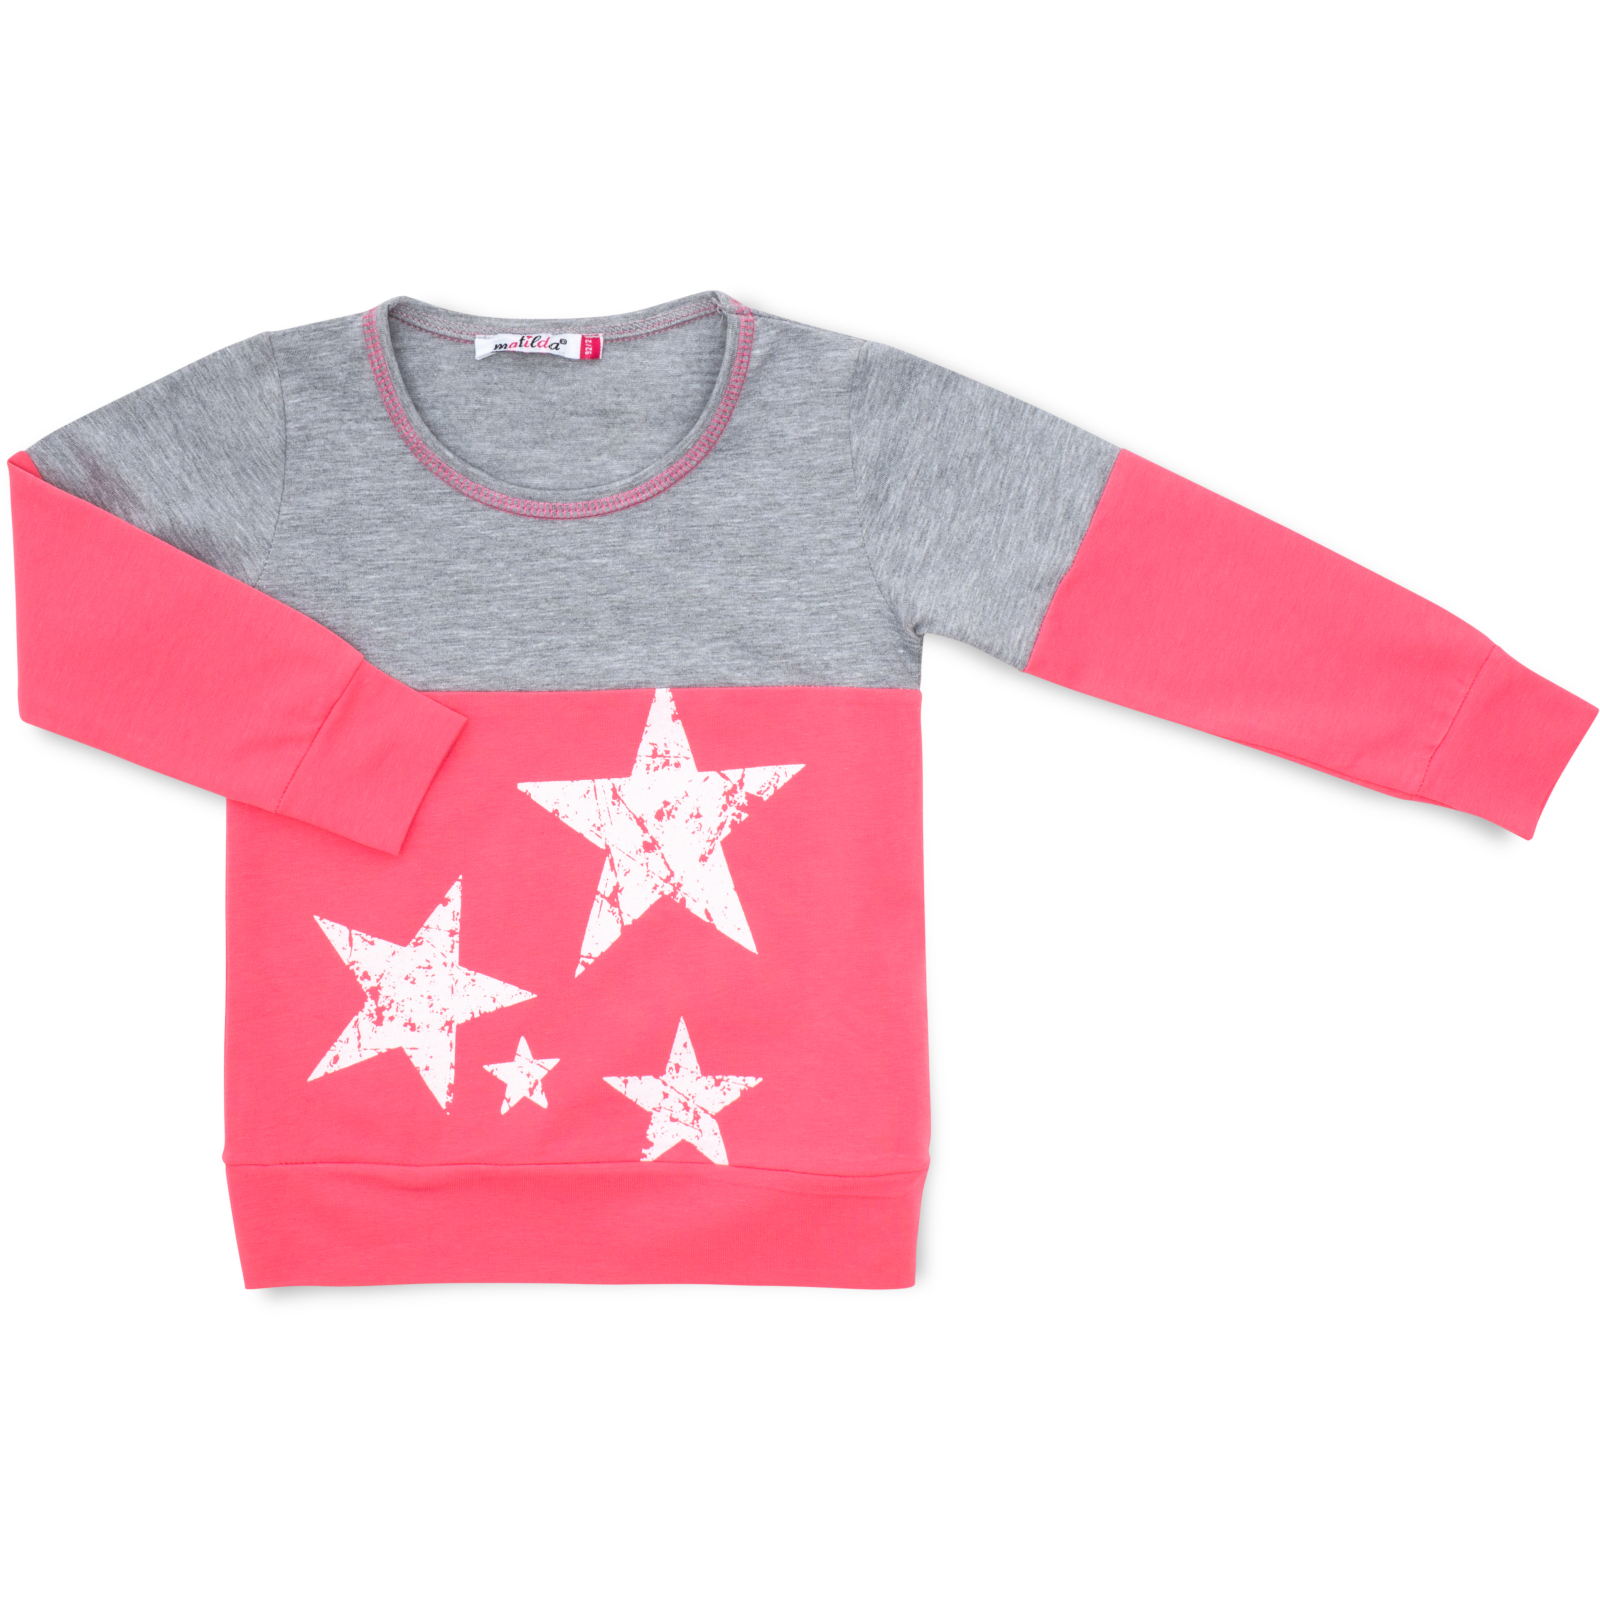 Пижама Matilda со звездочками (7167-134G-pink) изображение 2